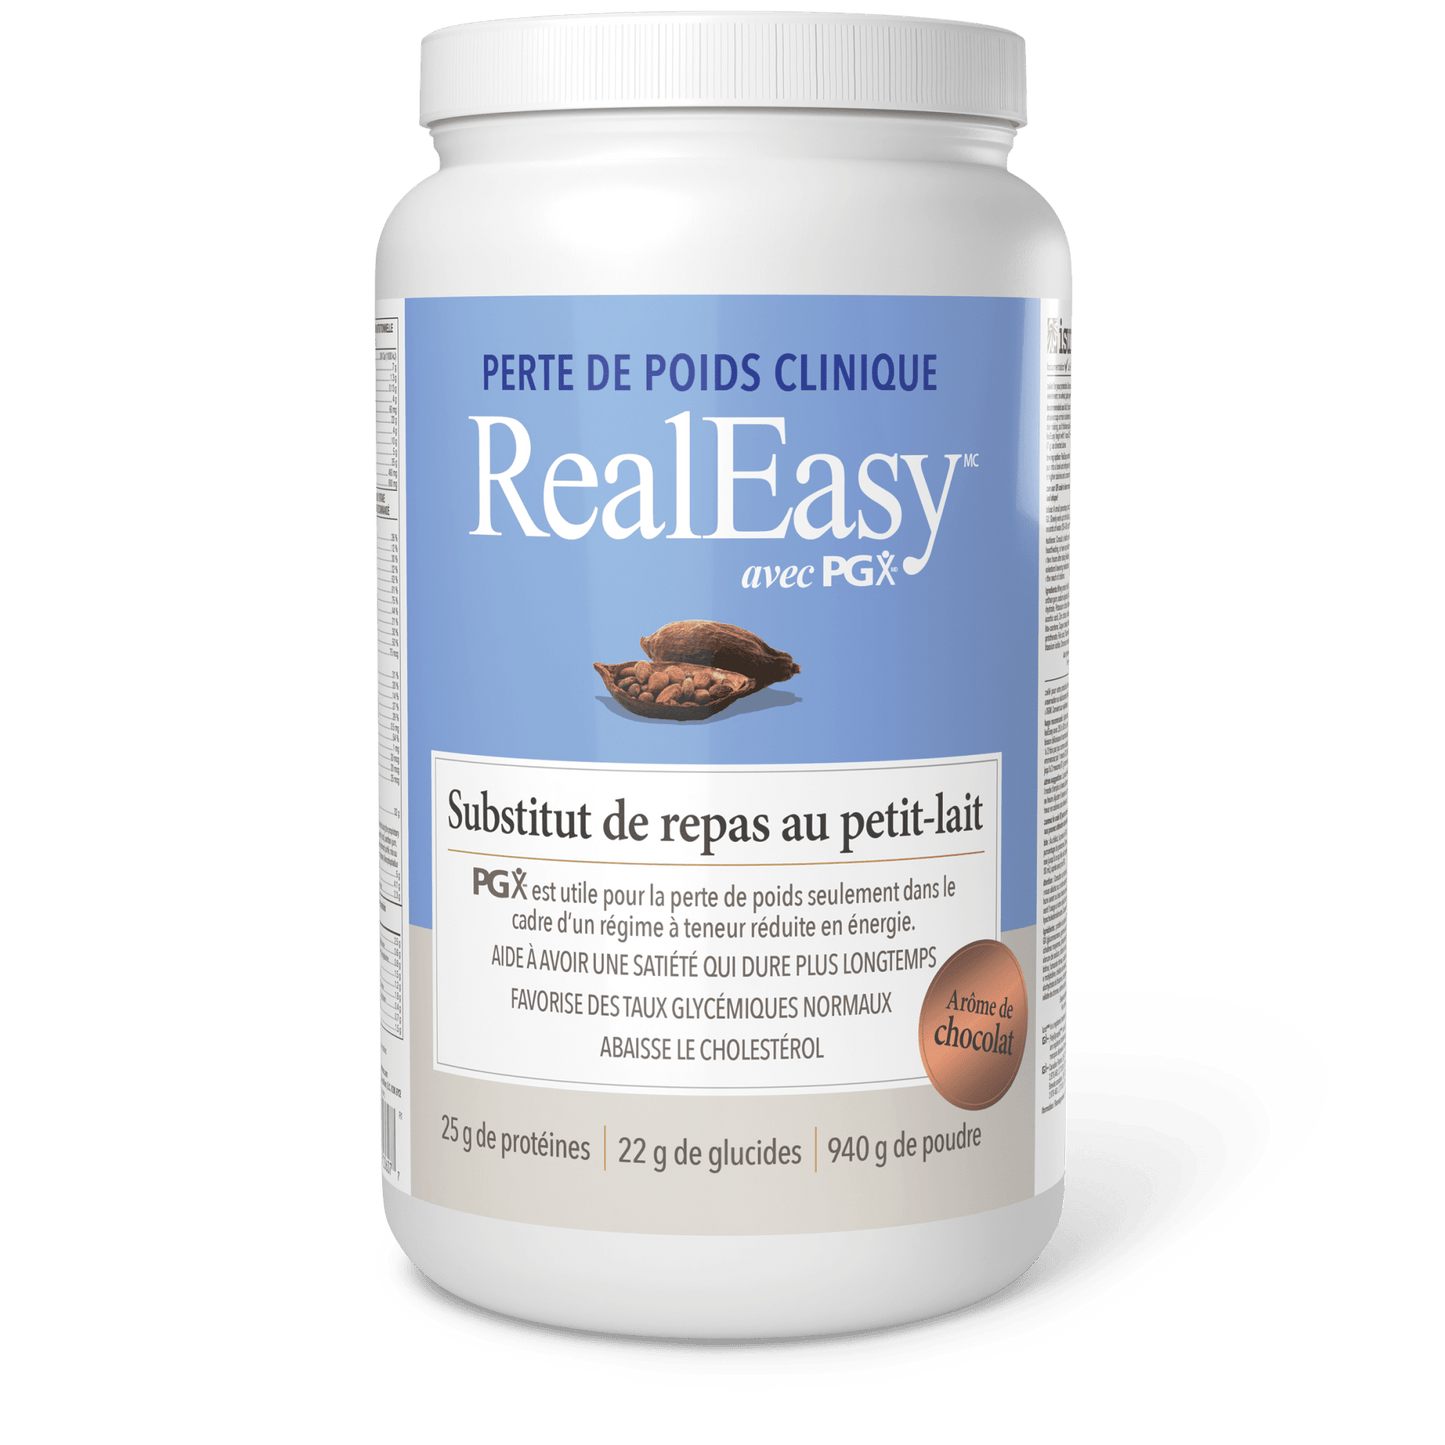 RealEasy avec PGX Substitut de repas au petit-lait poudre, arôme de chocolat, Natural Factors|v|image|3607